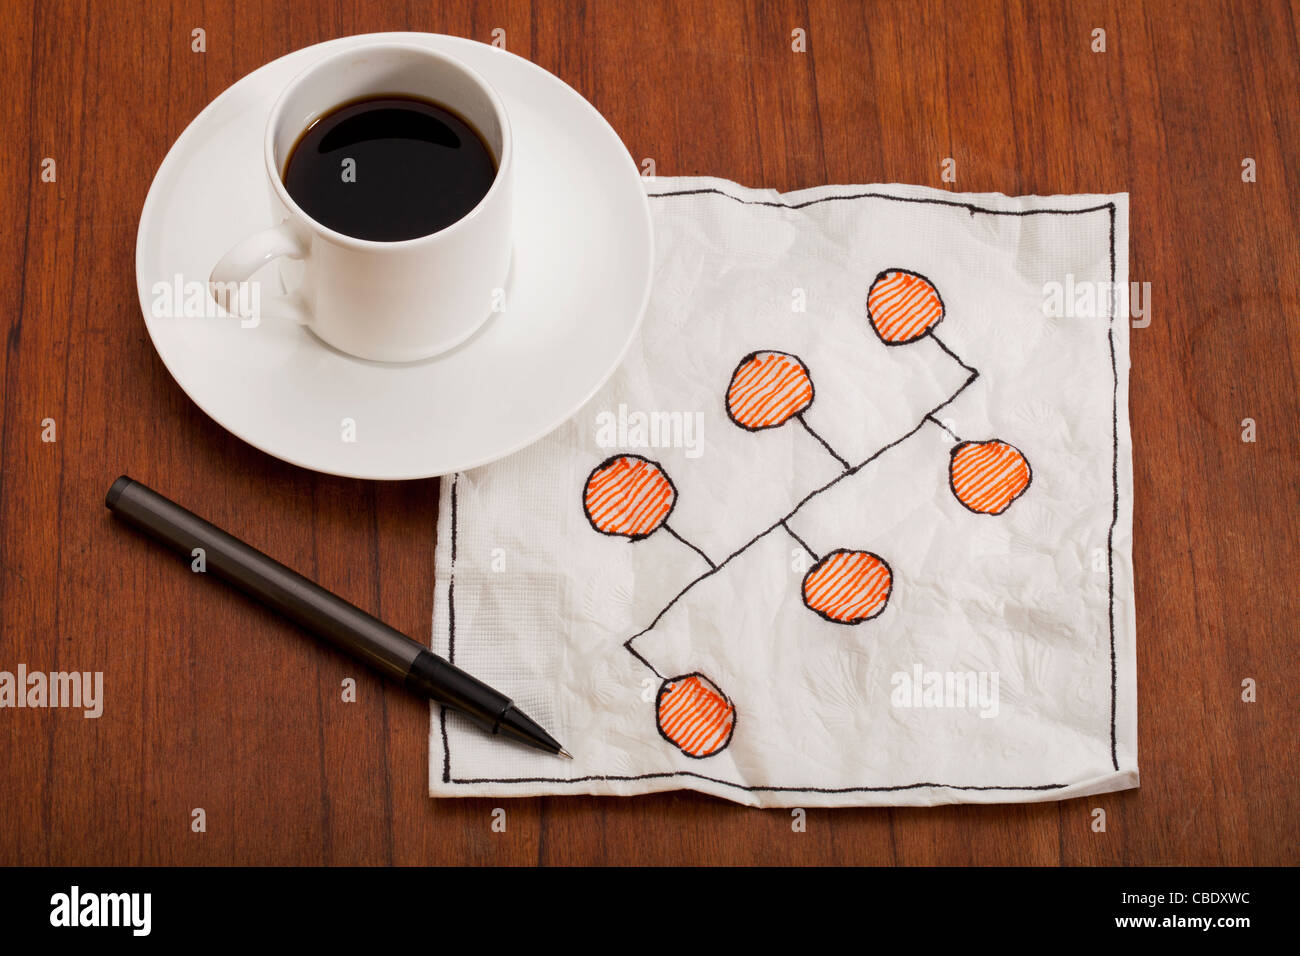 Bus oder Backbone-Netzwerk-Modell - Serviette Doodle mit Kaffee Espressotasse auf Tisch Stockfoto